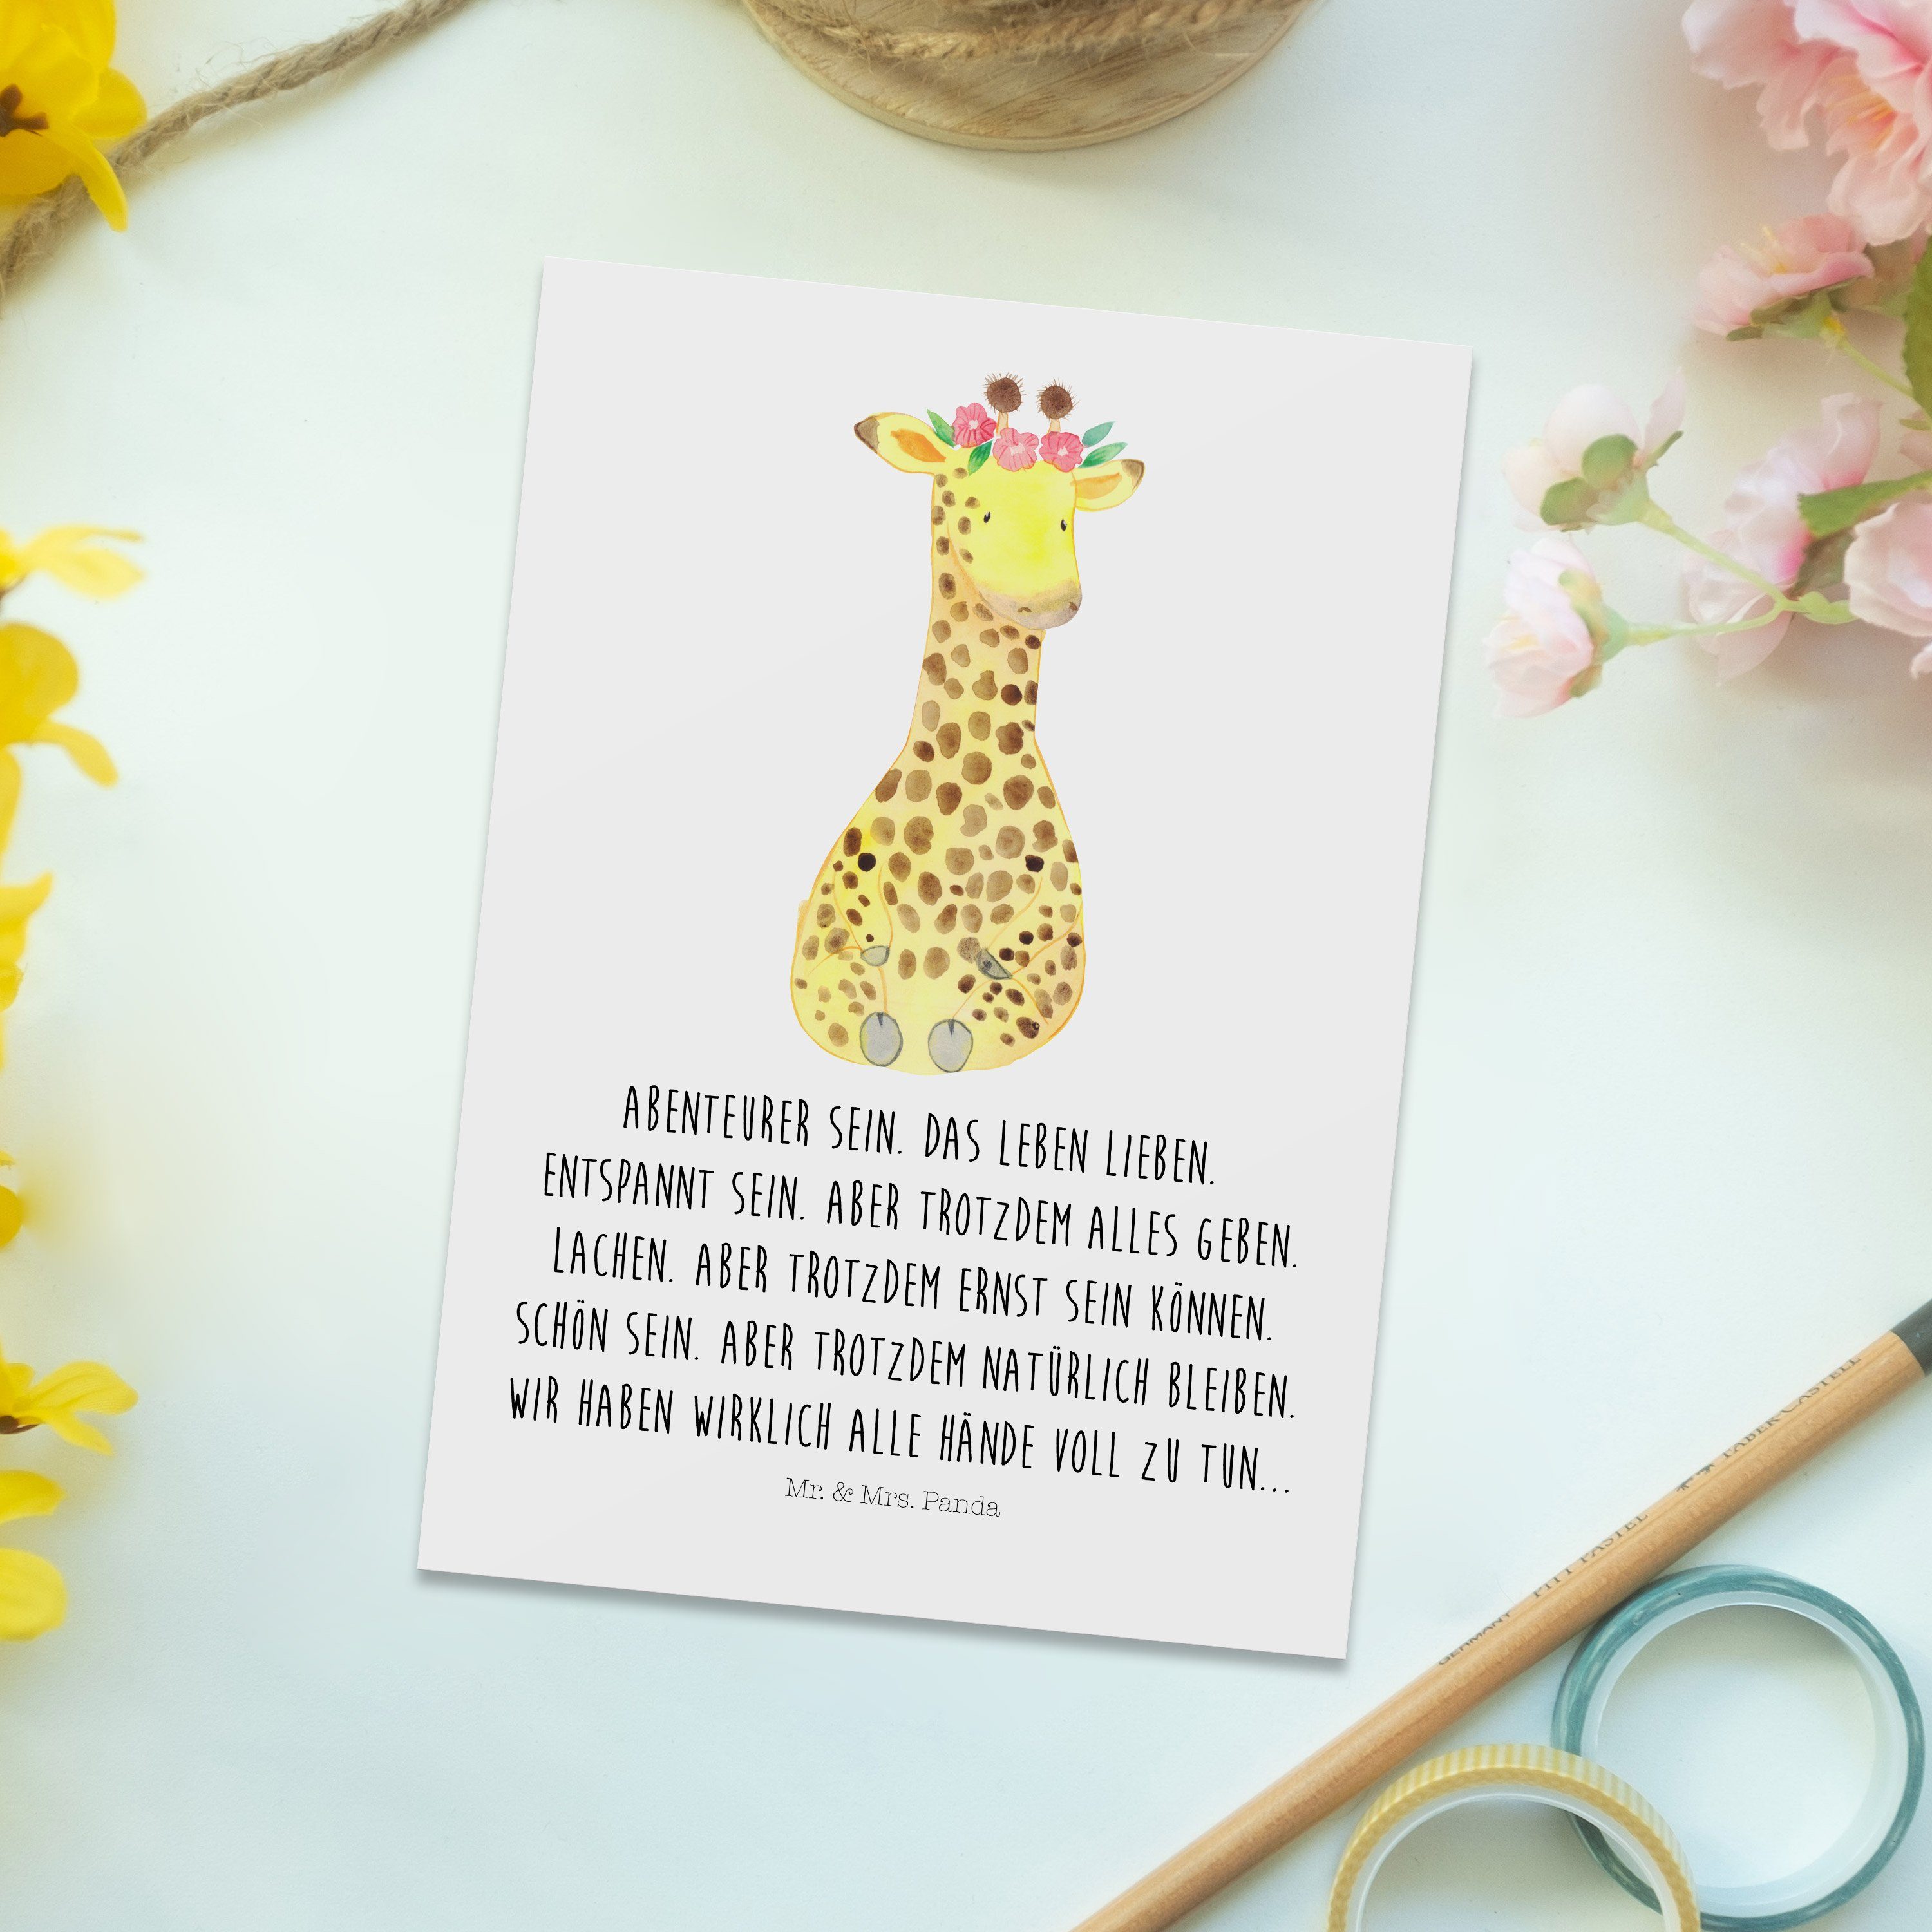 Wildtiere, & Weiß Postkarte Giraffe Panda - Mrs. Mr. Geschenk, Freundin, Einladung Blumenkranz -